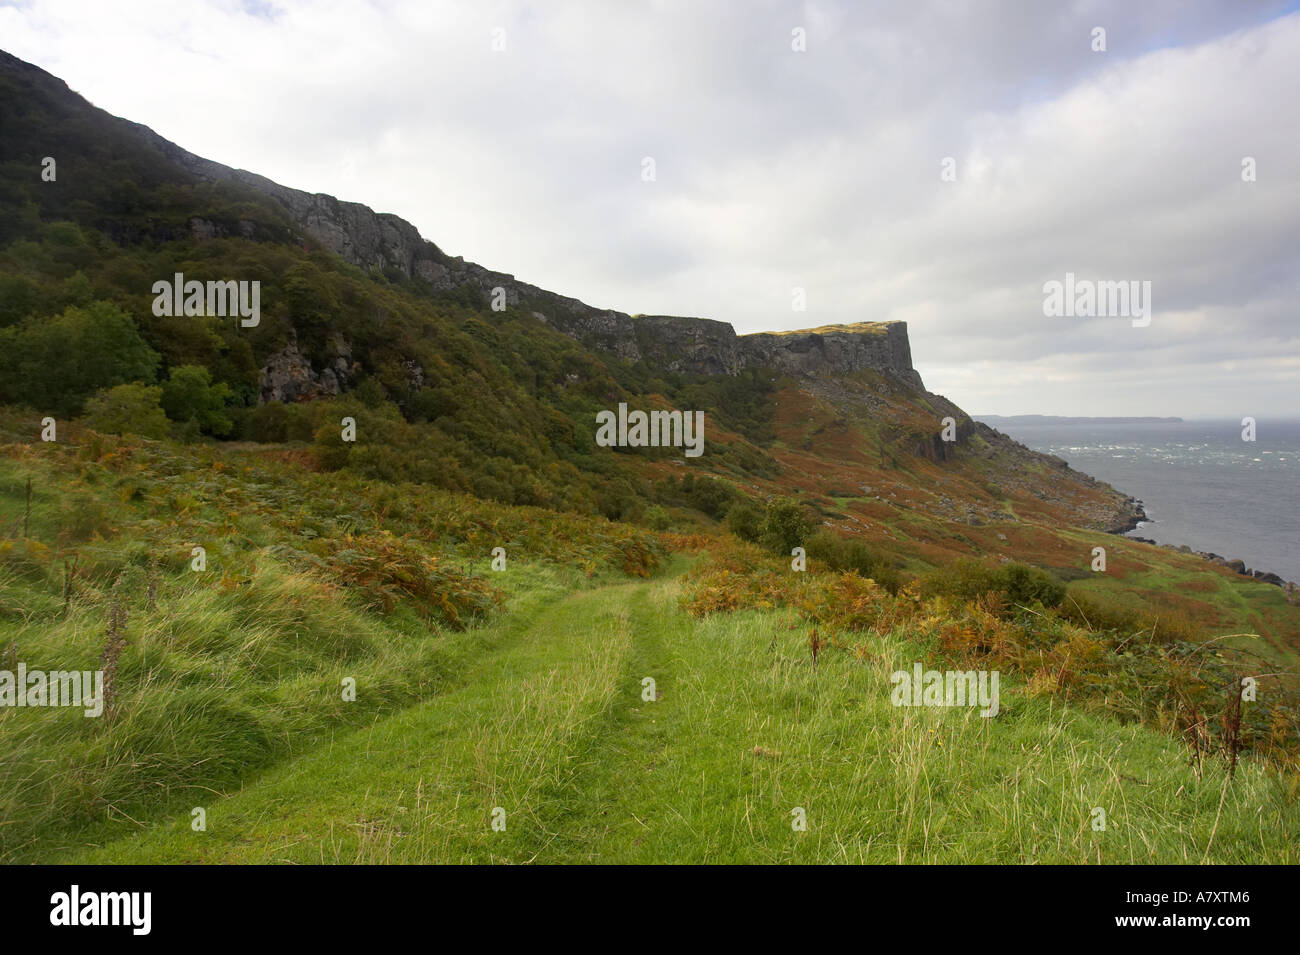 Vista de cabeza justo y pista de hierba Murlough Bay el condado de Antrim de Irlanda del Norte como una ubicación utilizada en el Juego de Tronos Foto de stock